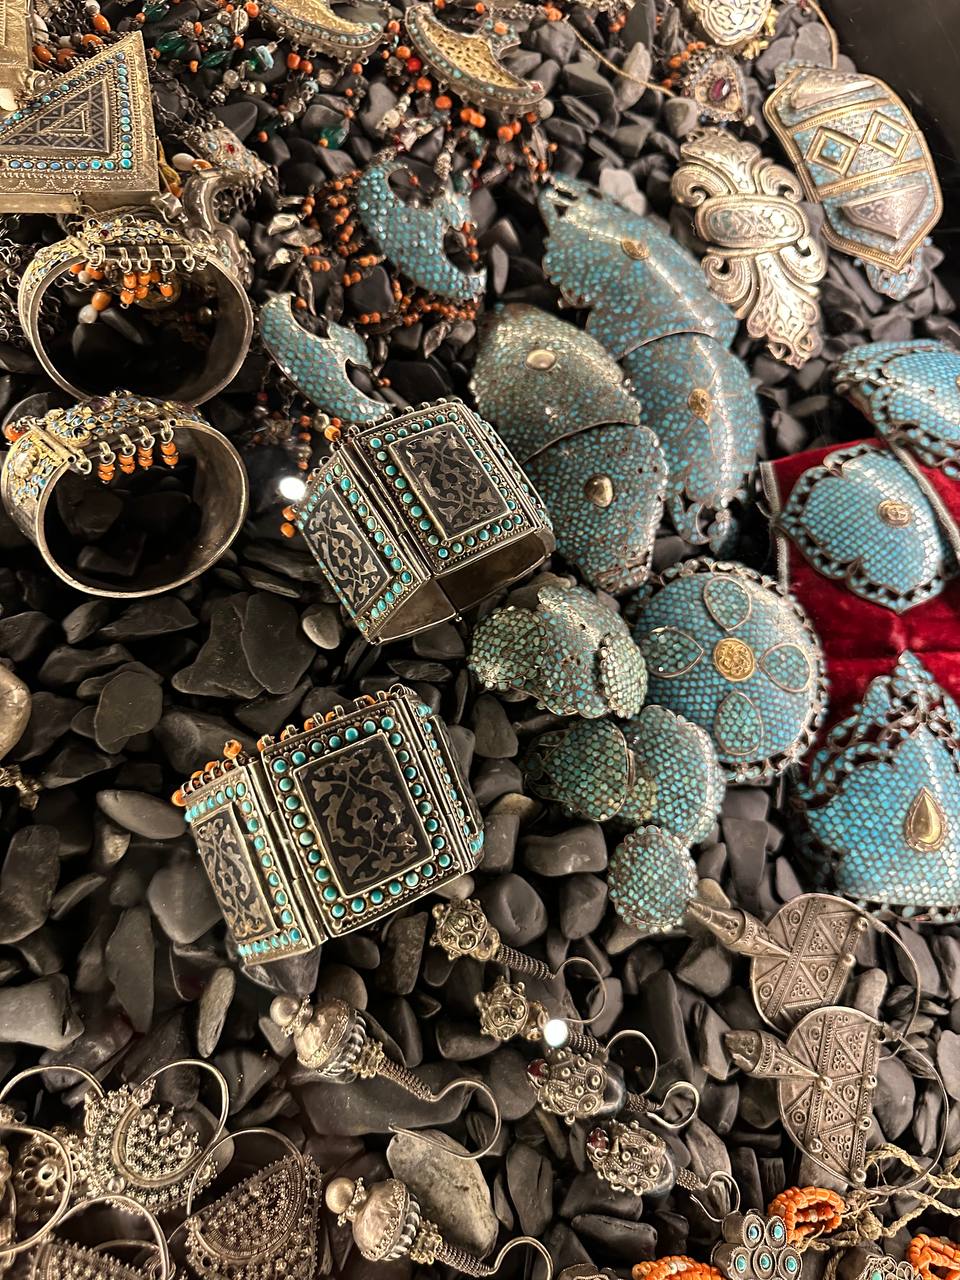 An assortment of bracelets, cuffs, and earrings from Le Monde des Arts de la Parure